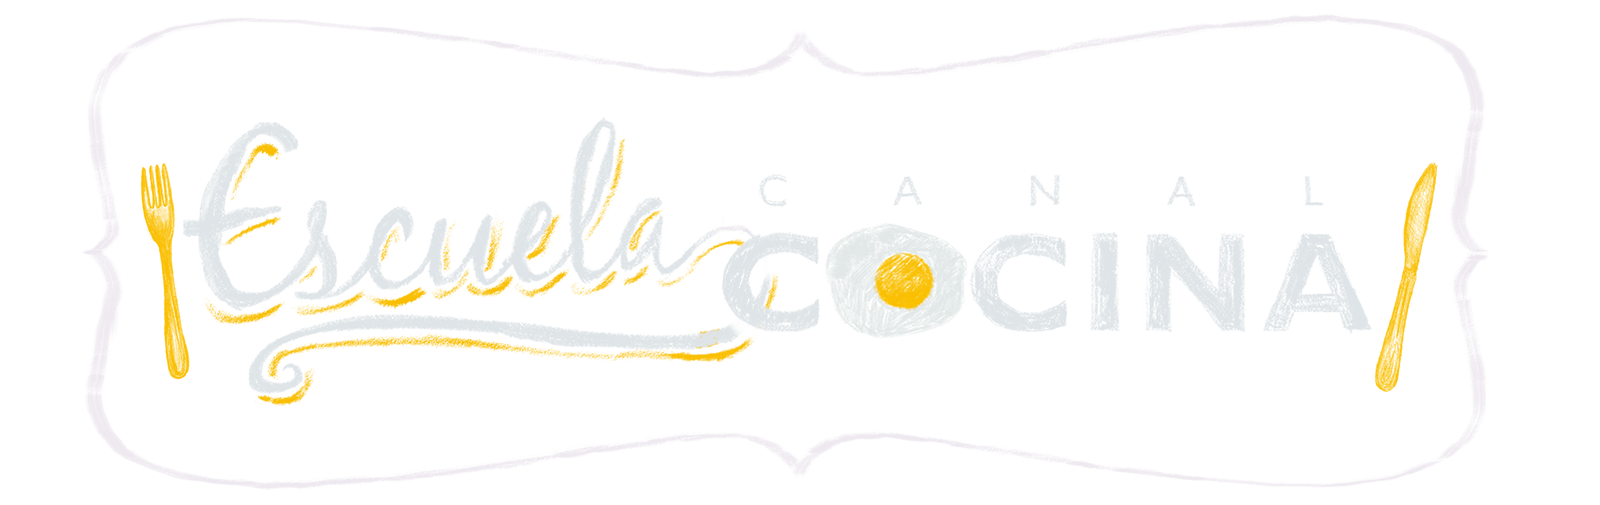 Escuela Canal Cocina